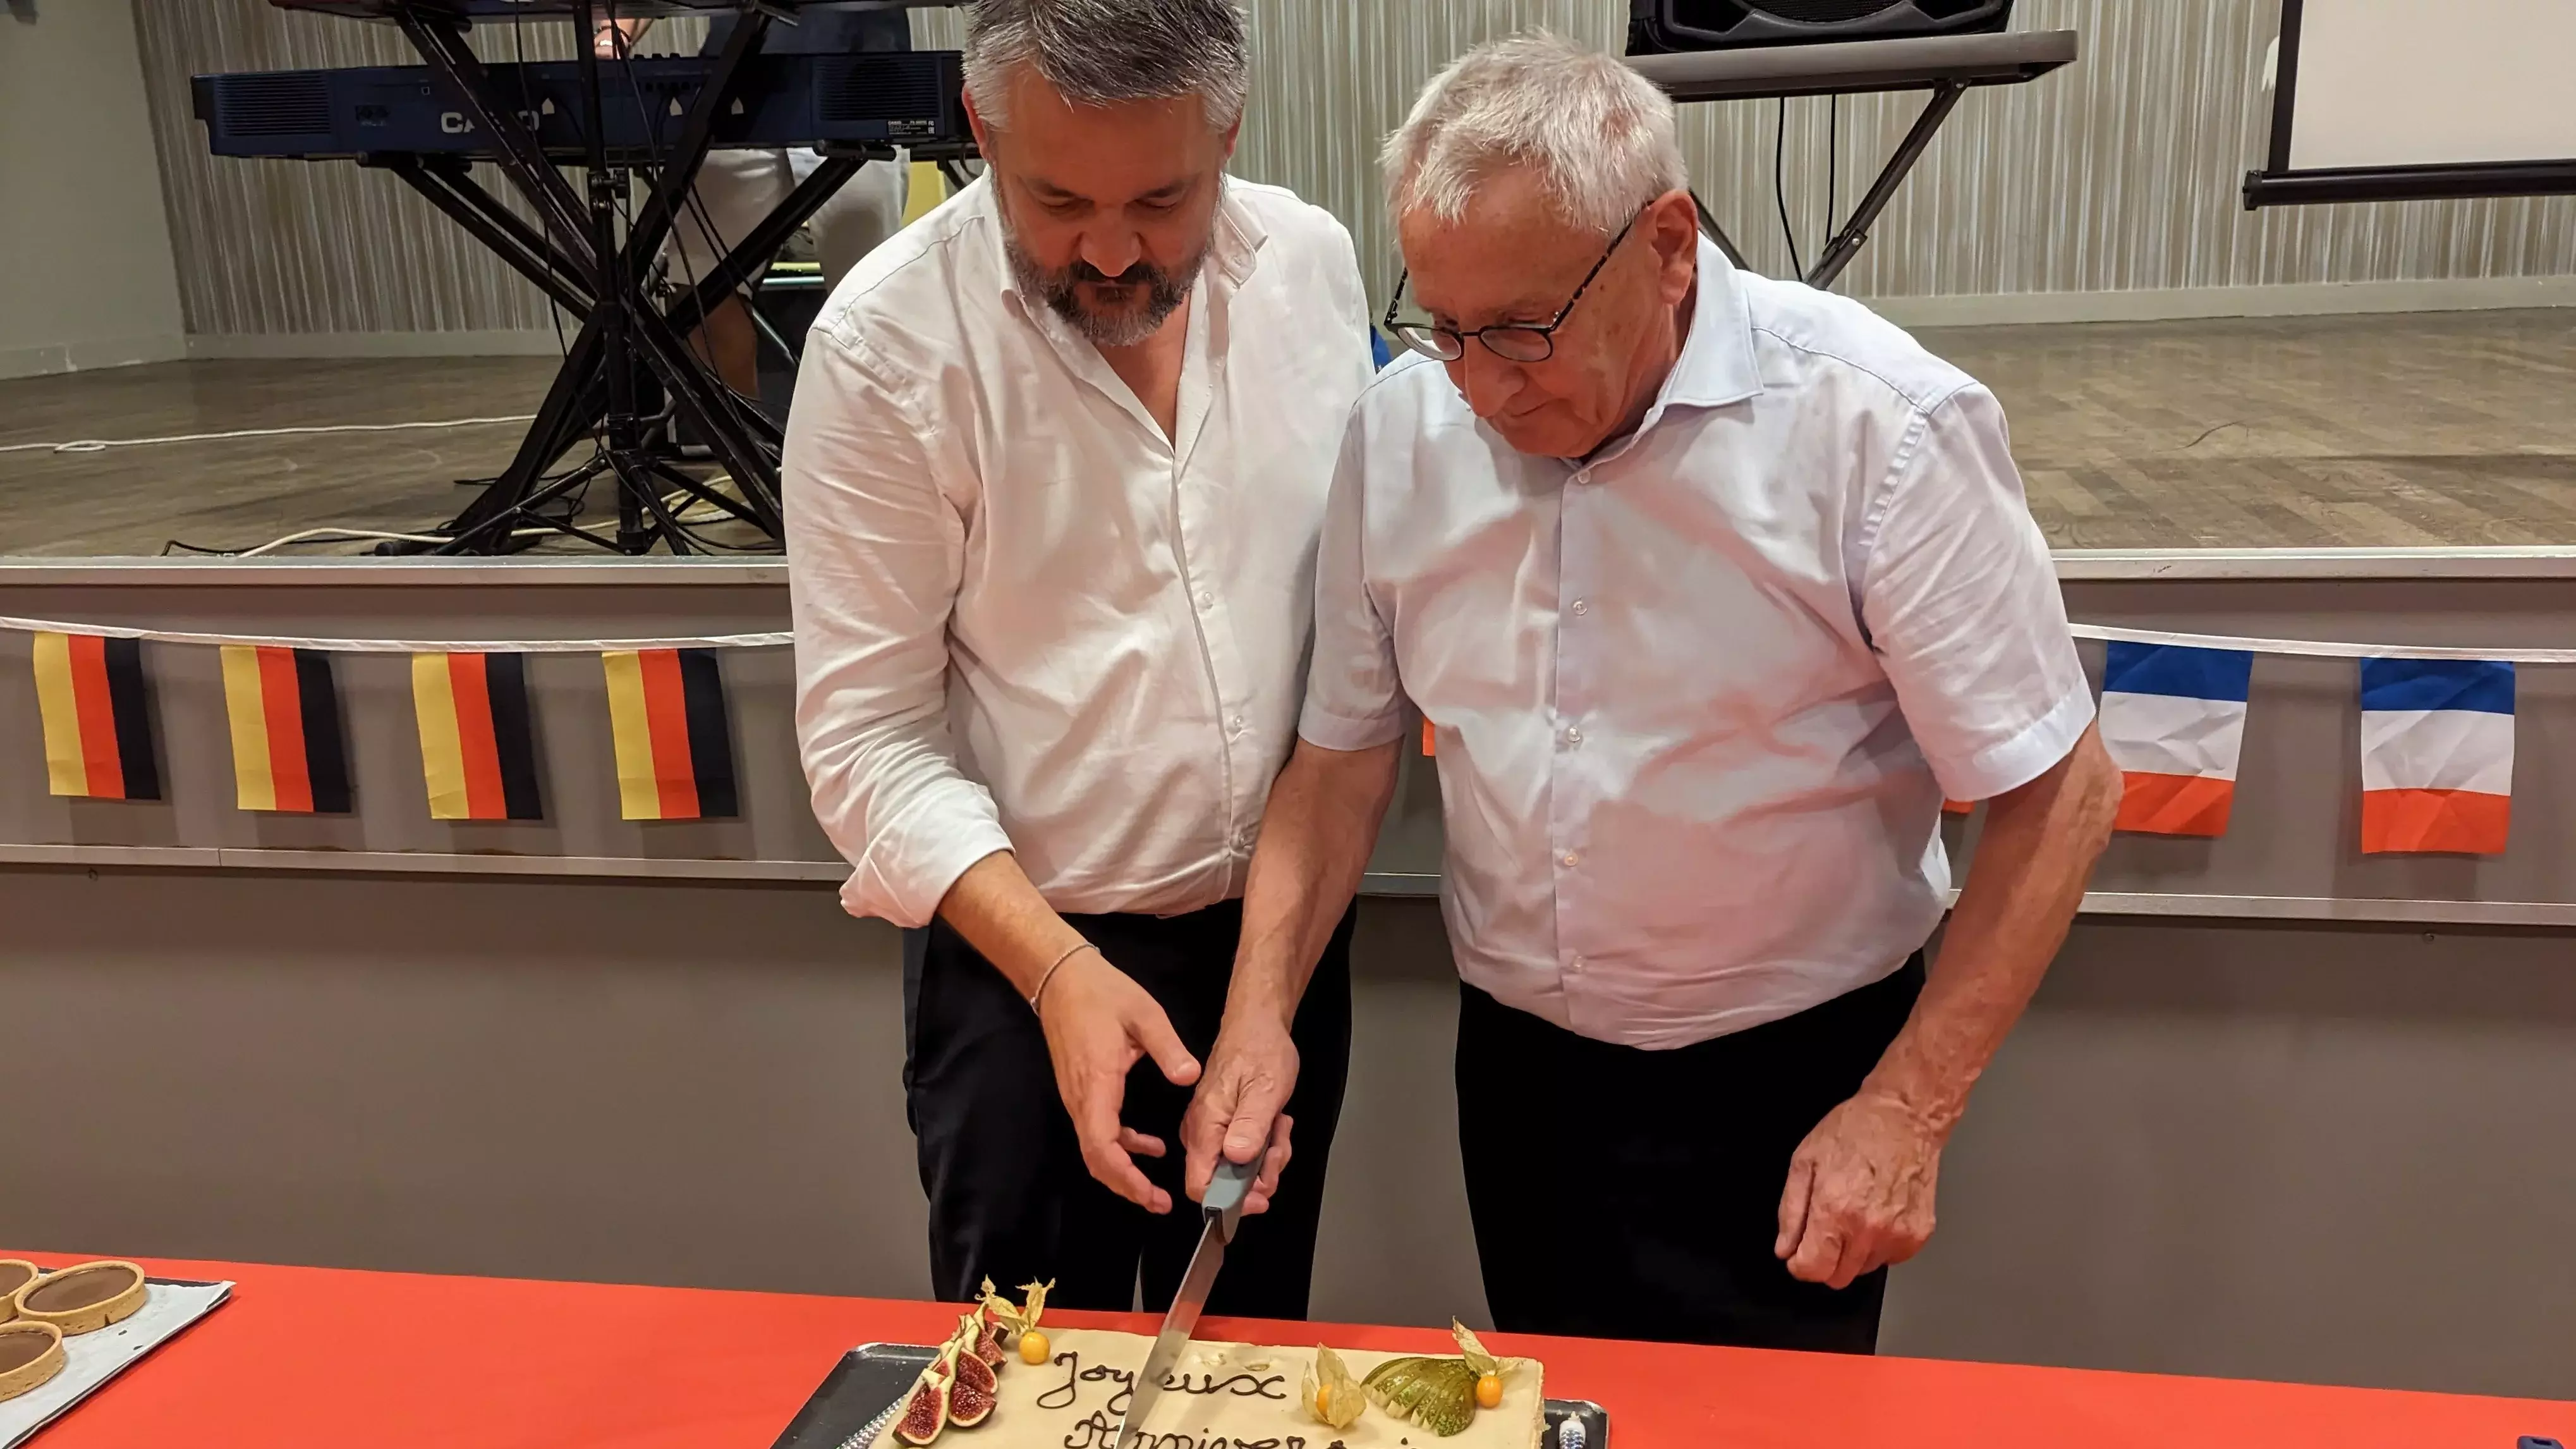 Bürgermeister Geraudie und Zweiter Bürgermeister Dr. Krauß schneiden den Jubiläumgskuchen an